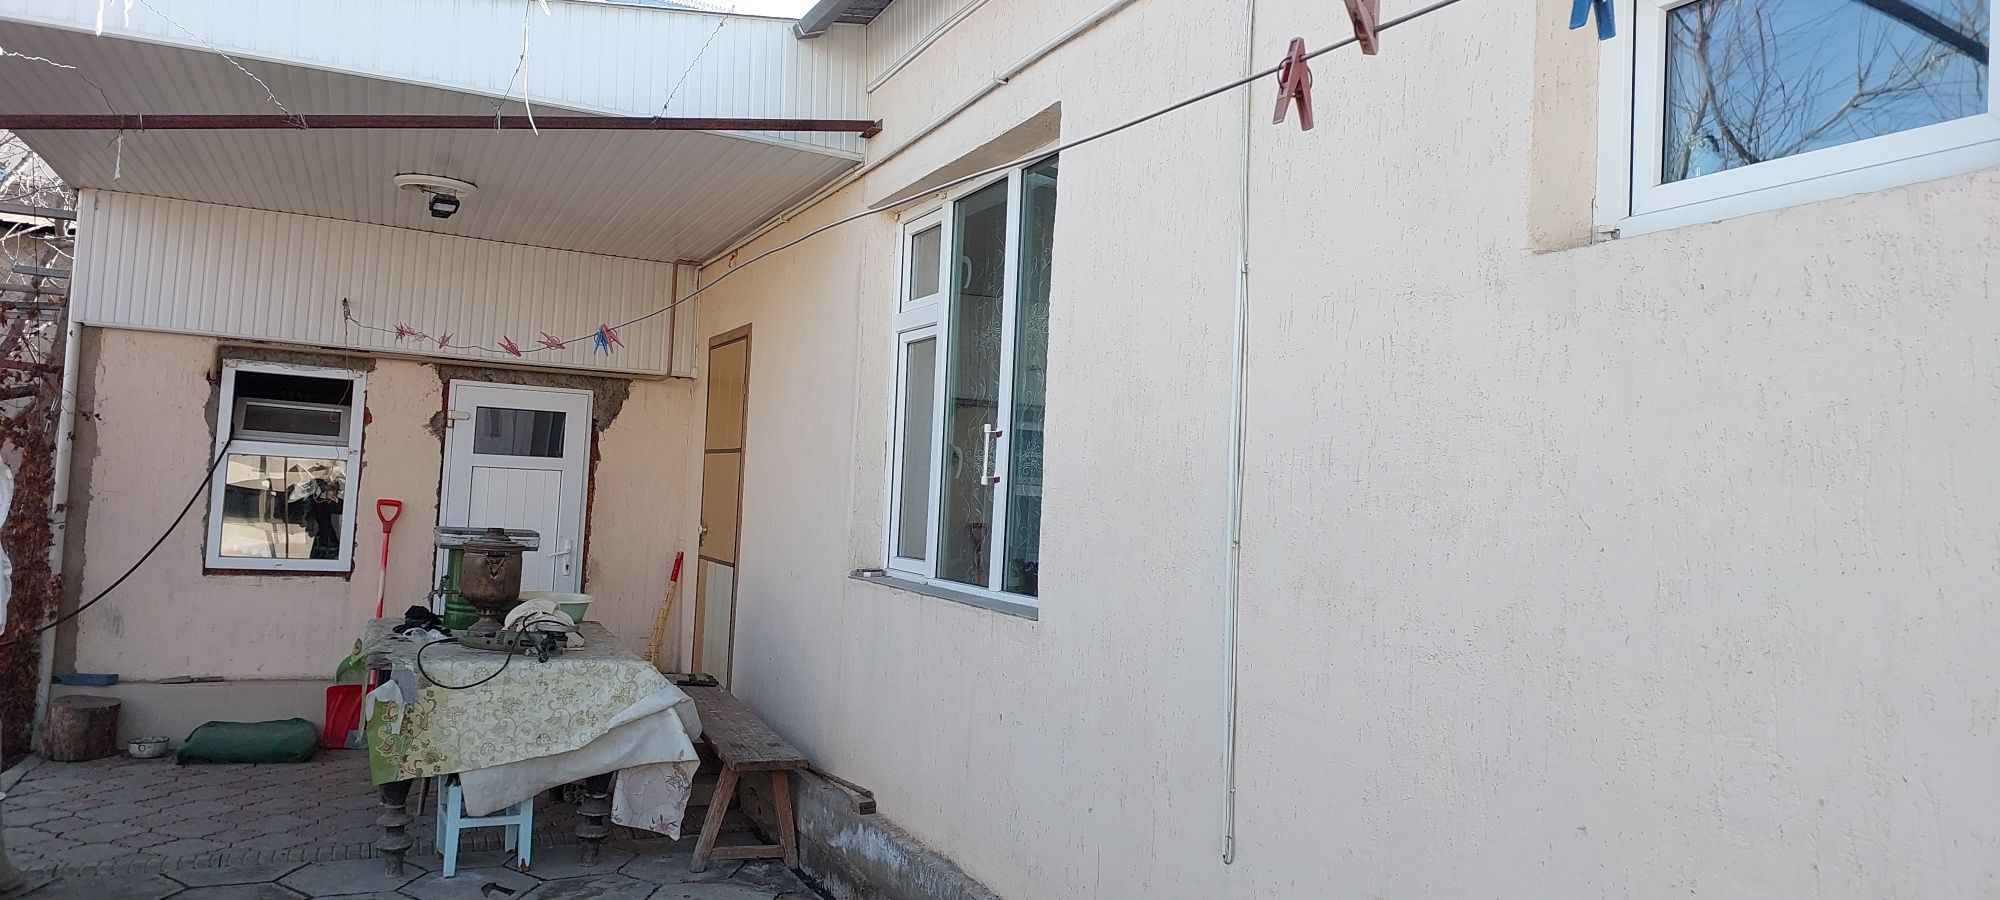 Продаётся дом в центре район Сулейманова Желтоксан